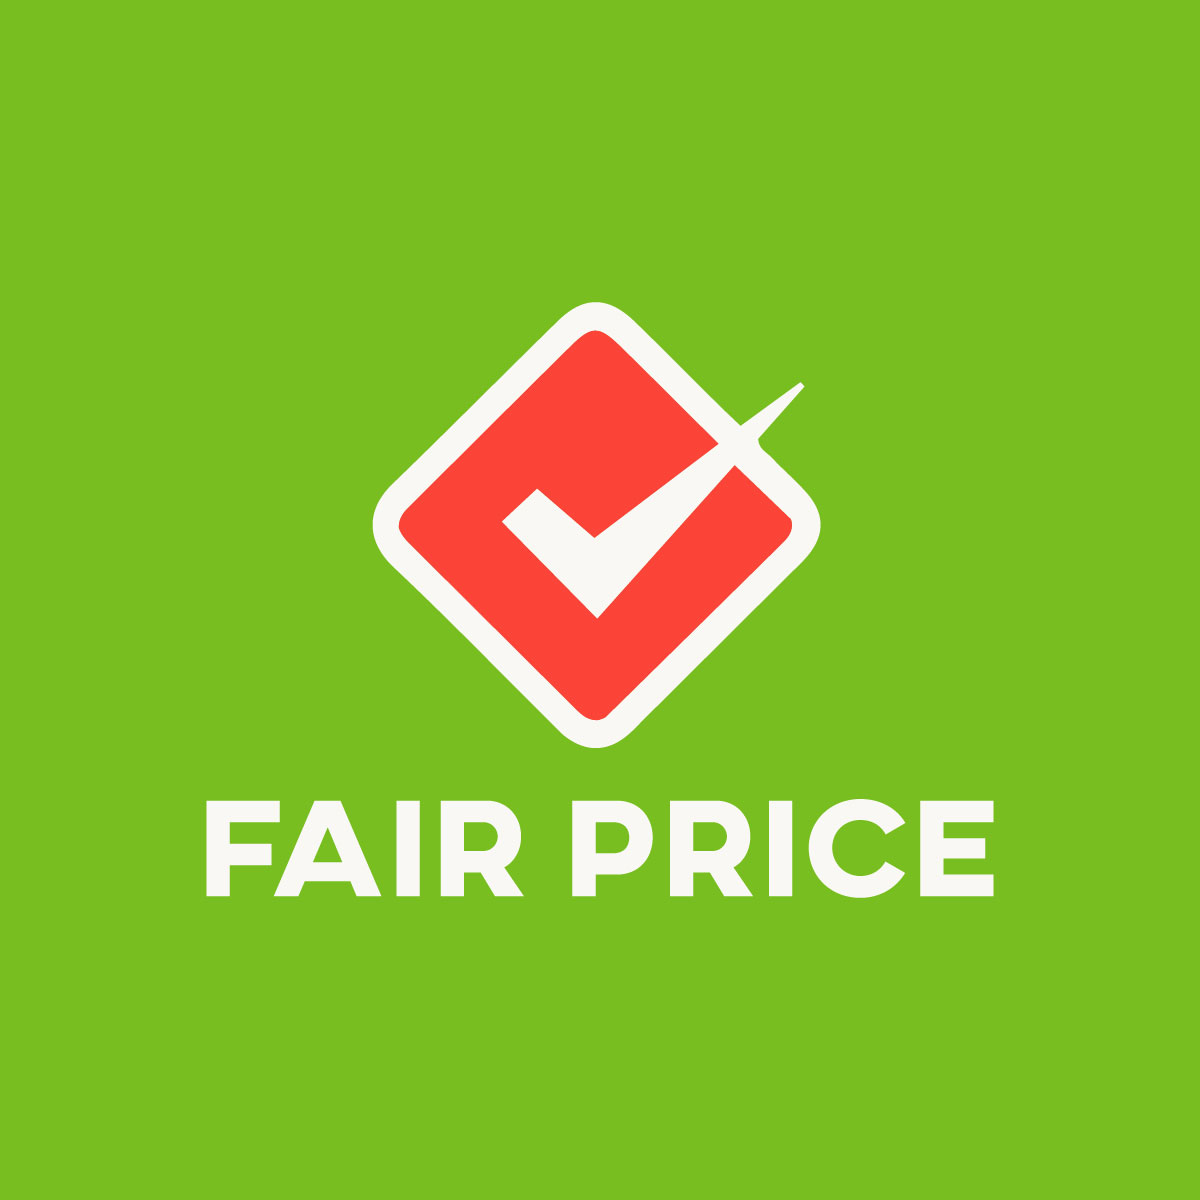 Fair Price